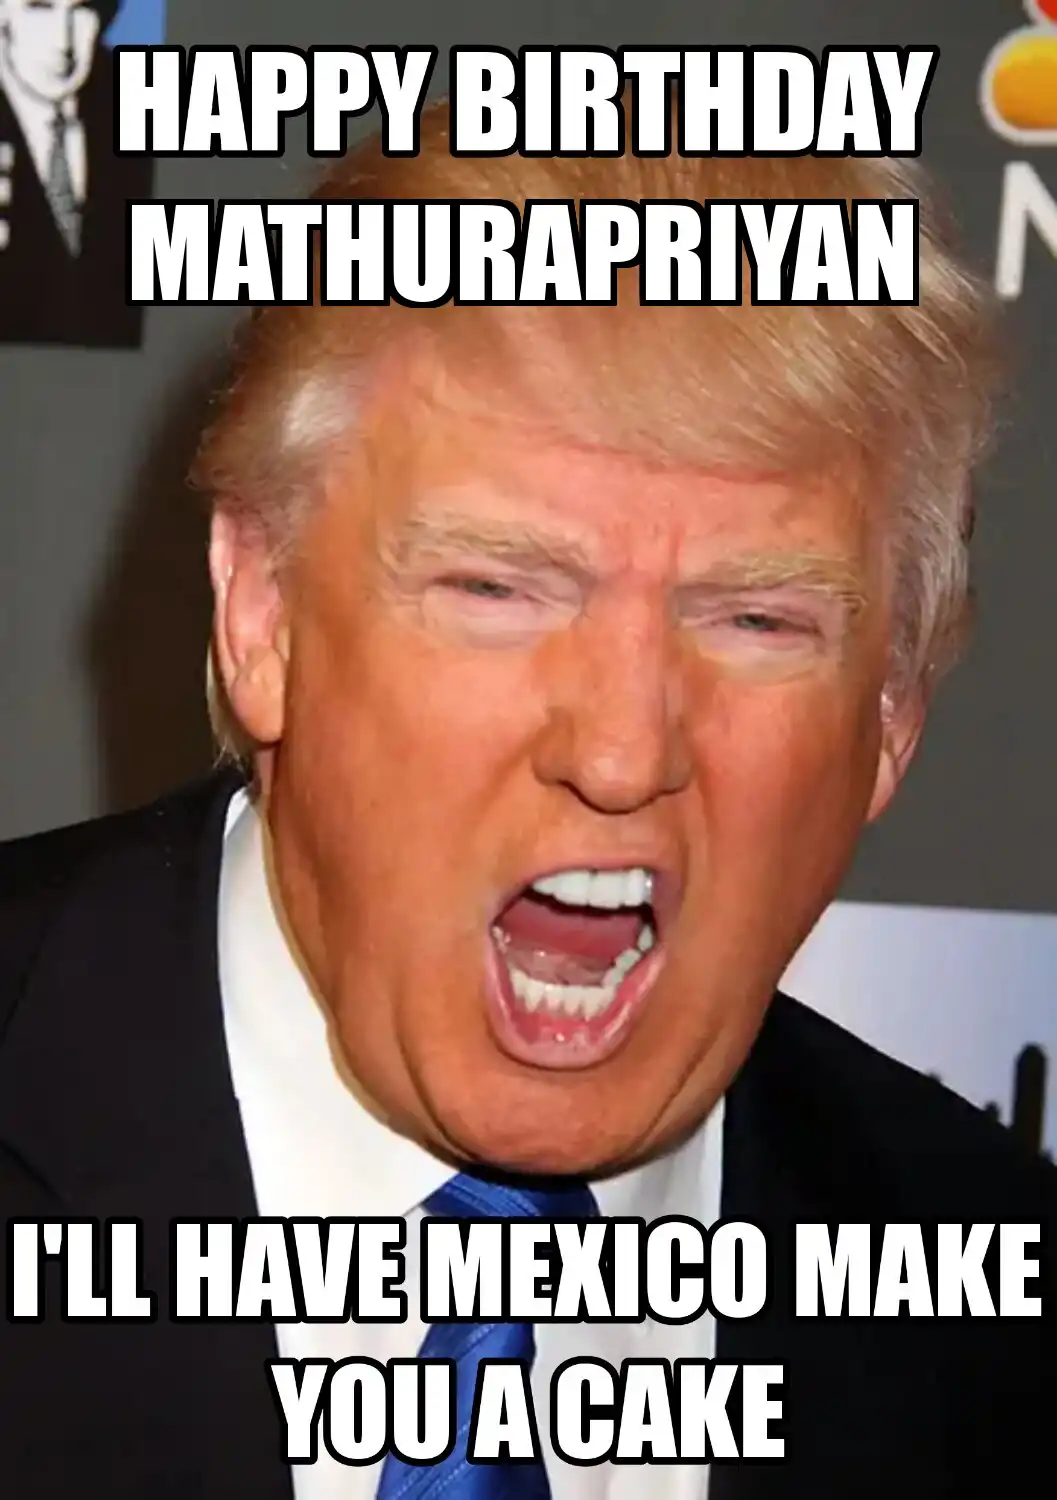 Happy Birthday Mathurapriyan Mexico Make You A Cake Meme